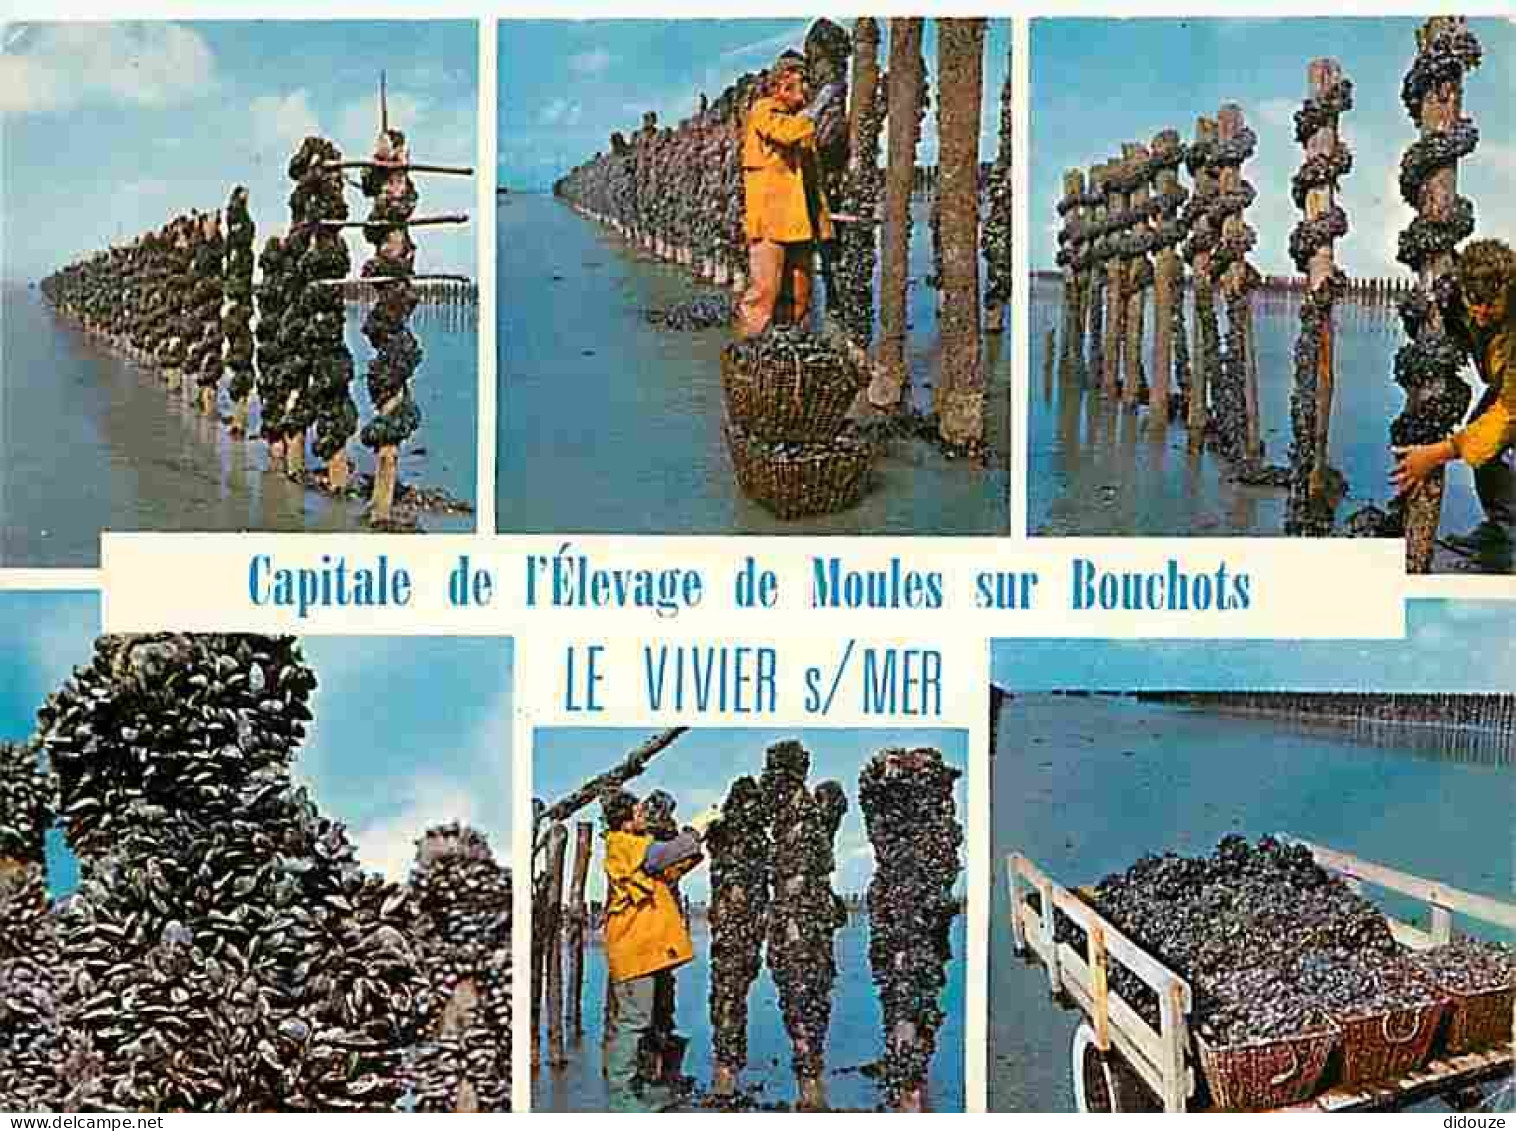 Metiers - Mytiliculture - Culture Des Moules - Mytilicultureur - Le Vivier Sur Mer - Capitale De L'èlevage Des Moules De - Pesca